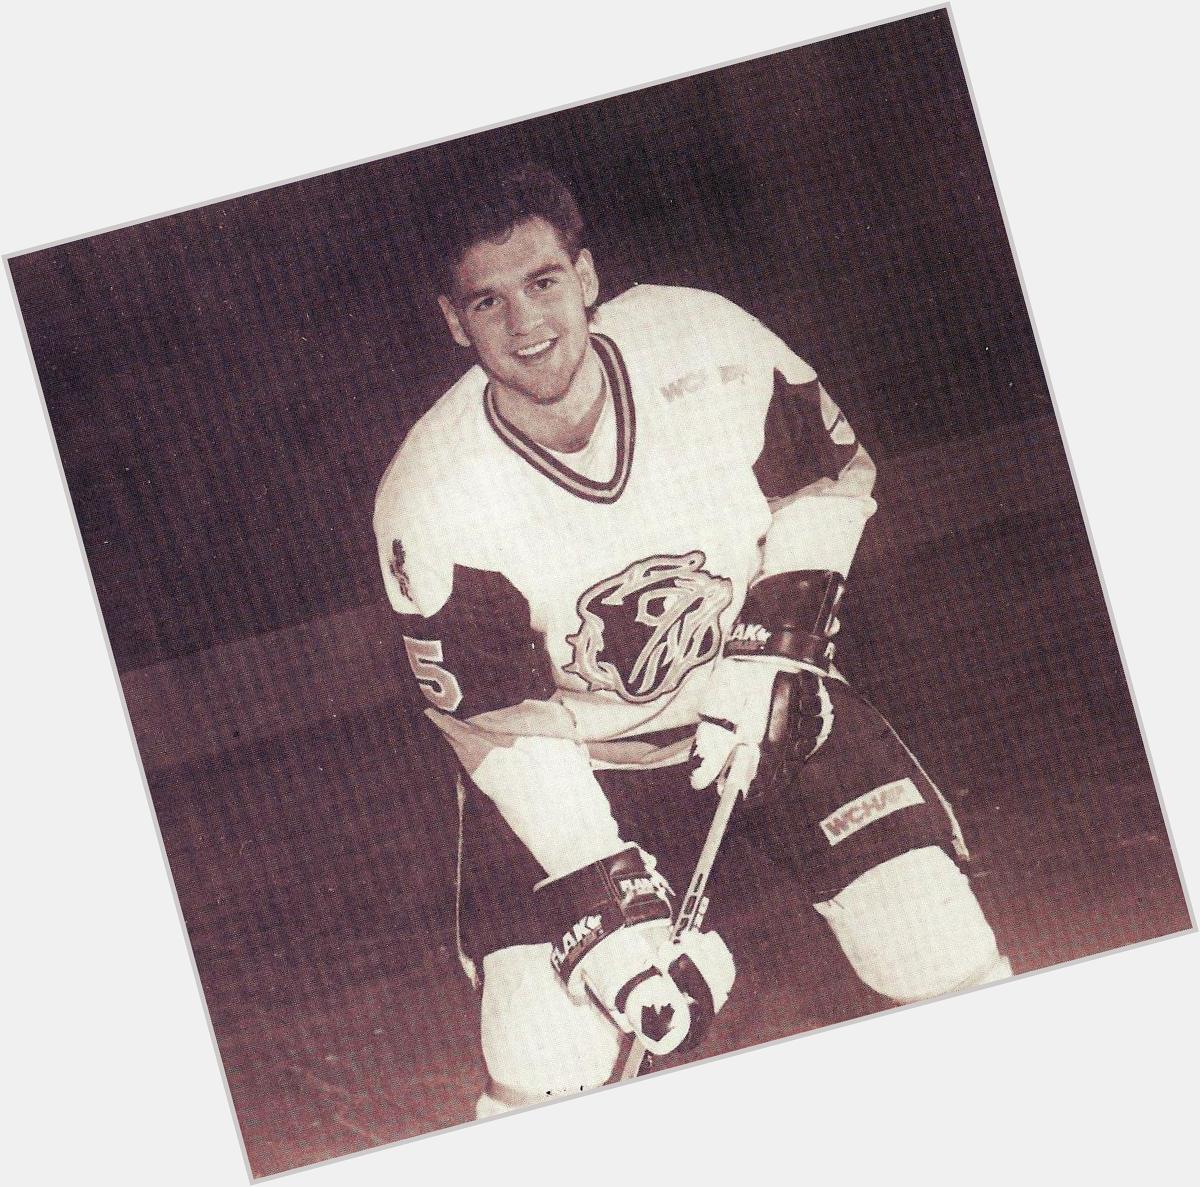 Happy birthday today to former standout, & NHL defenseman - Brett Hauer born in Richfield, MN 